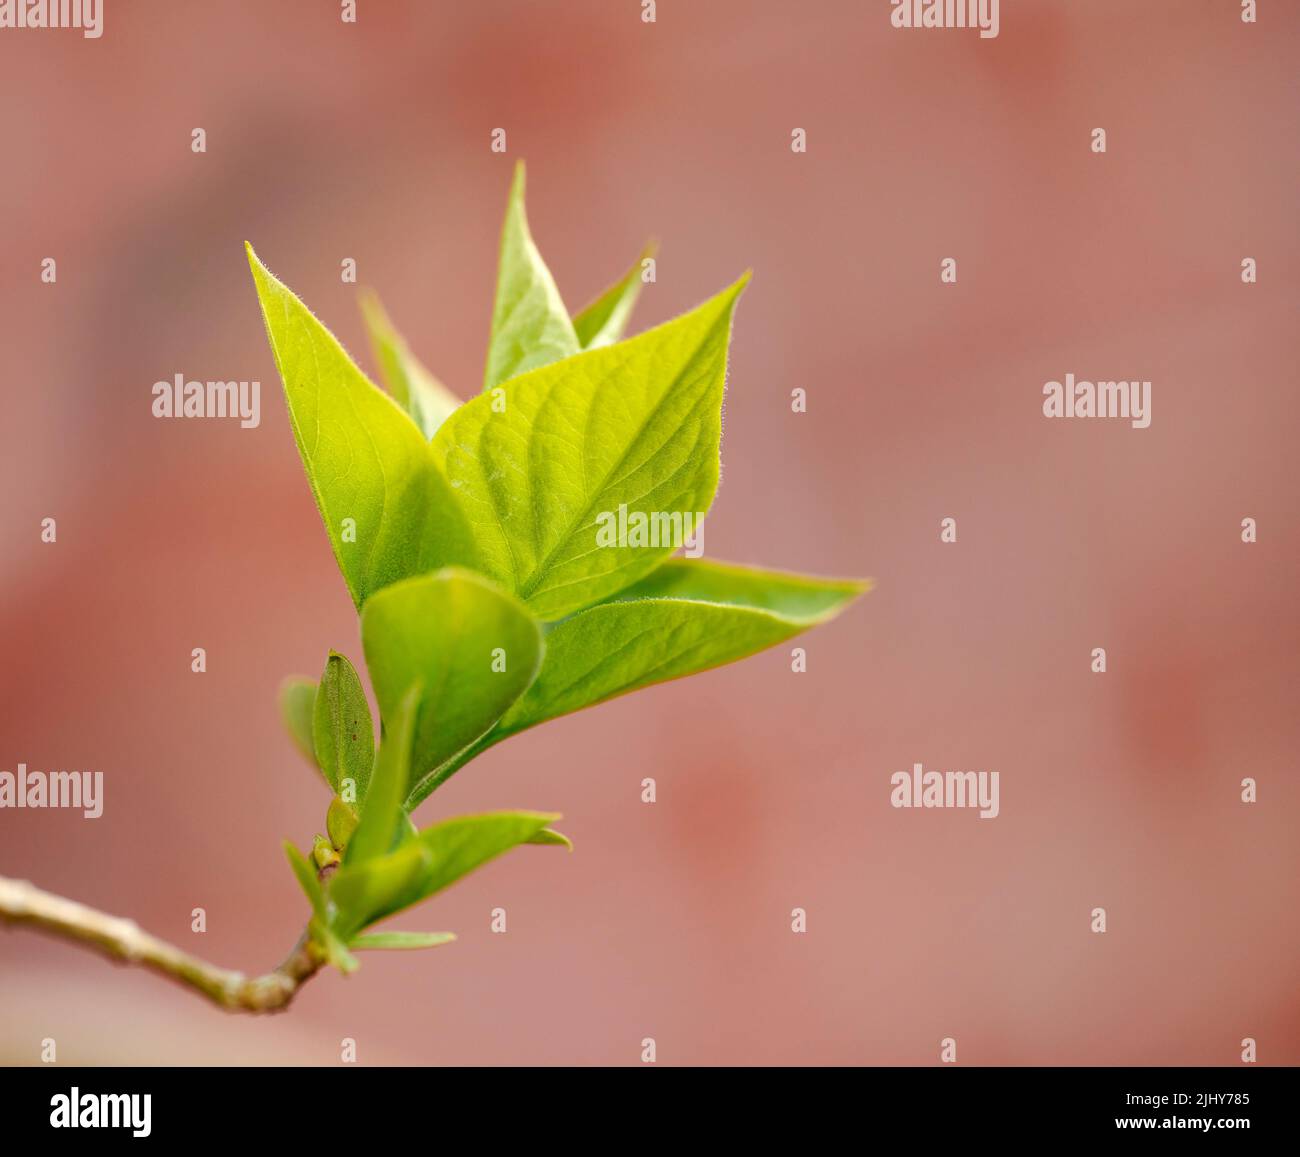 Blooming du zhong wächst auf einem Baum in einem Garten oder Hinterhof. Nahaufnahme einer hübschen grünen Eucomia, die in der Natur mit leuchtenden, lebendigen Blättern sprießt Stockfoto